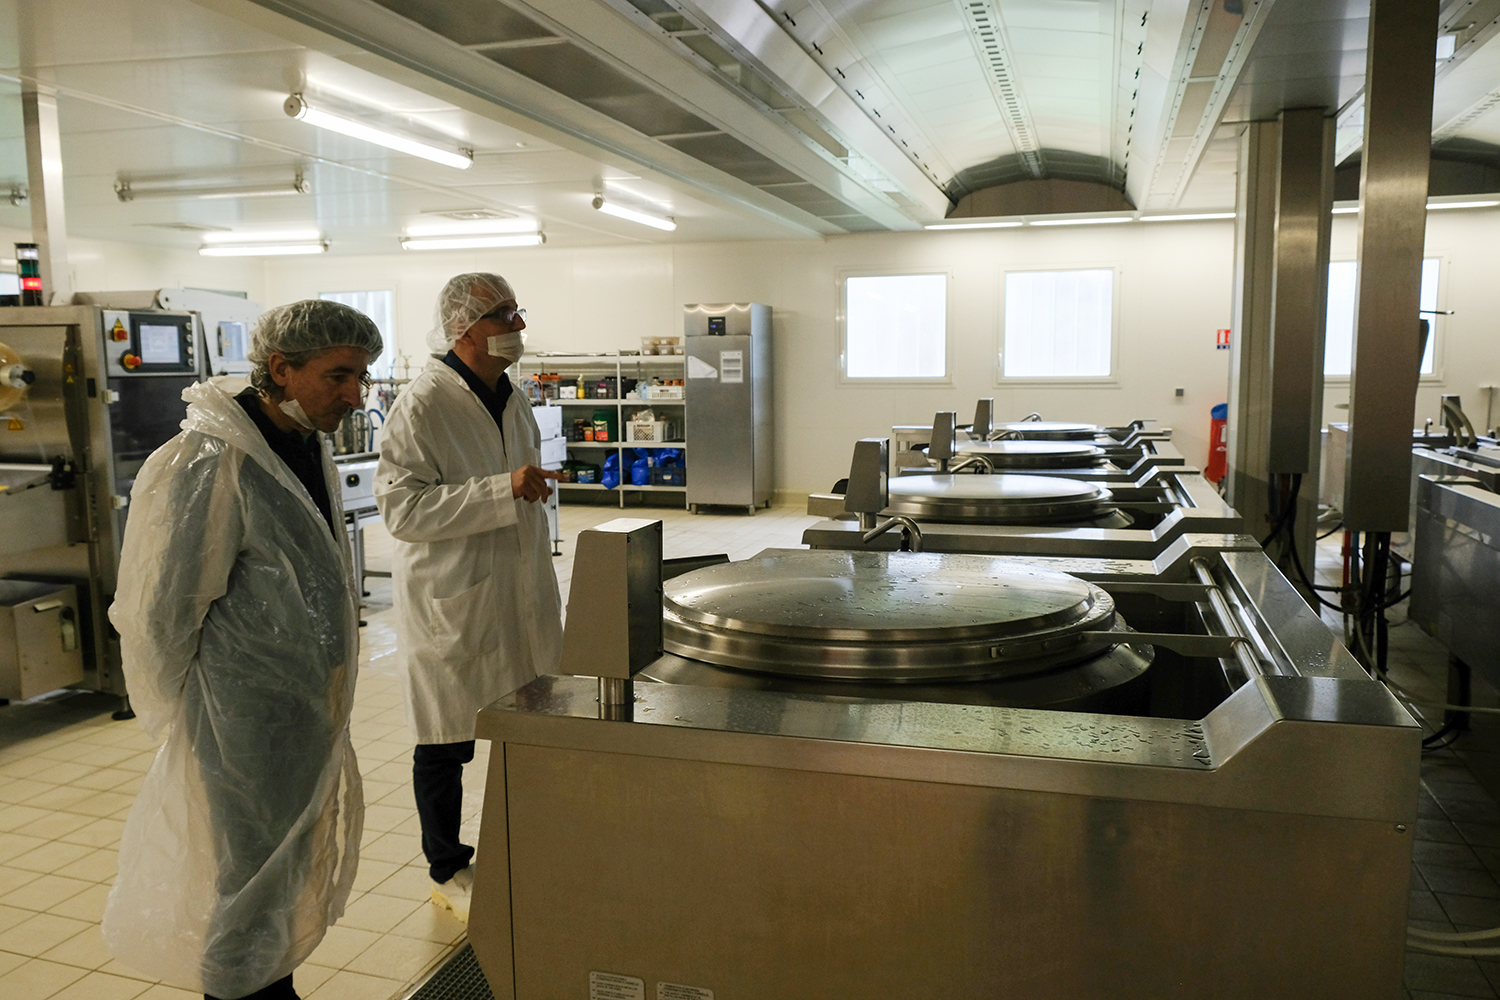 Michel IFRI est présent pour accompagner l’envoyée spéciale des globe-reporters et le Directeur. Ils commencent par le cœur de la cuisine où des marmites géantes permettent aux cuisiniers de préparer 14 000 repas par jour.